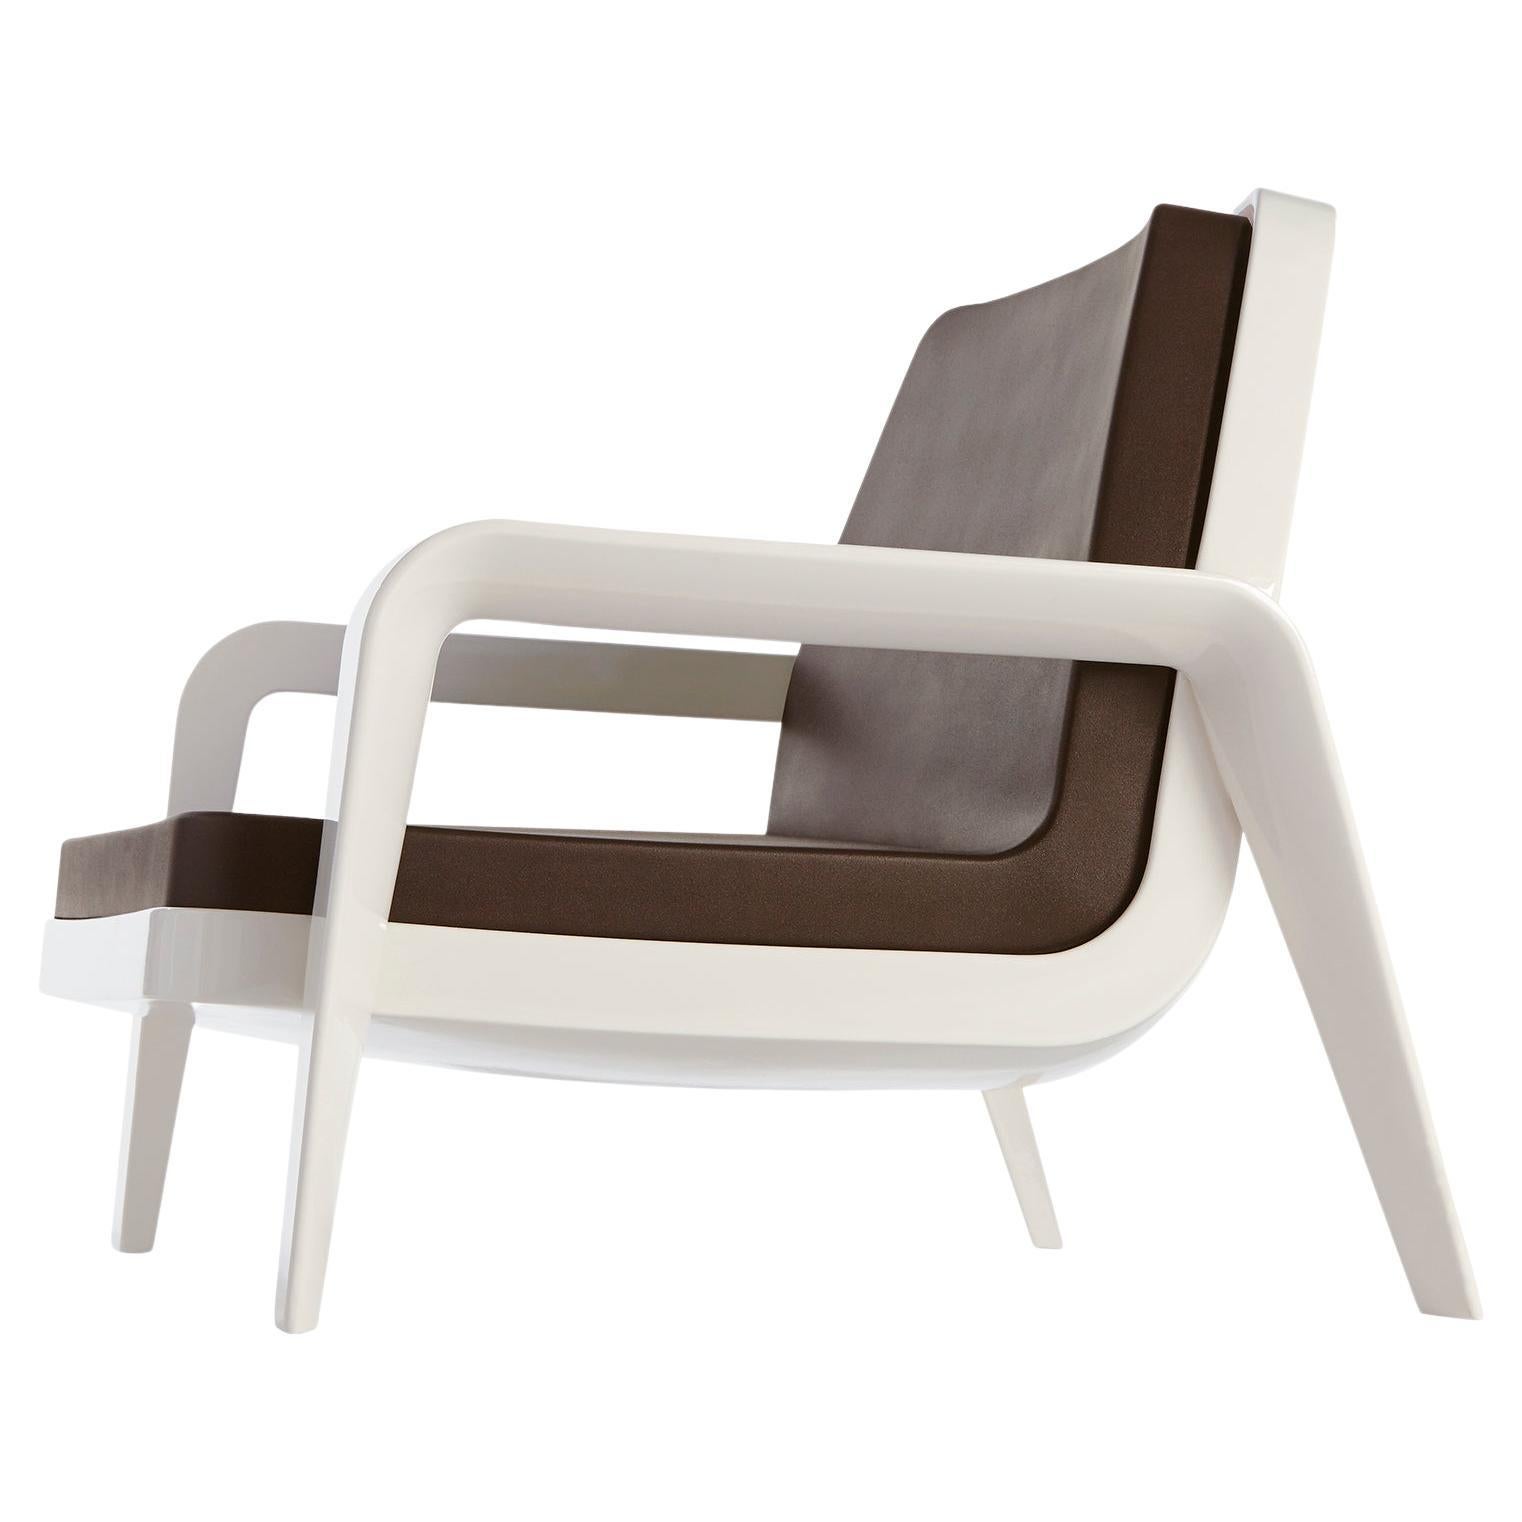 Slide Design America Sessel aus weichem Schokoladenstoff mit milchig-weißem Rahmen